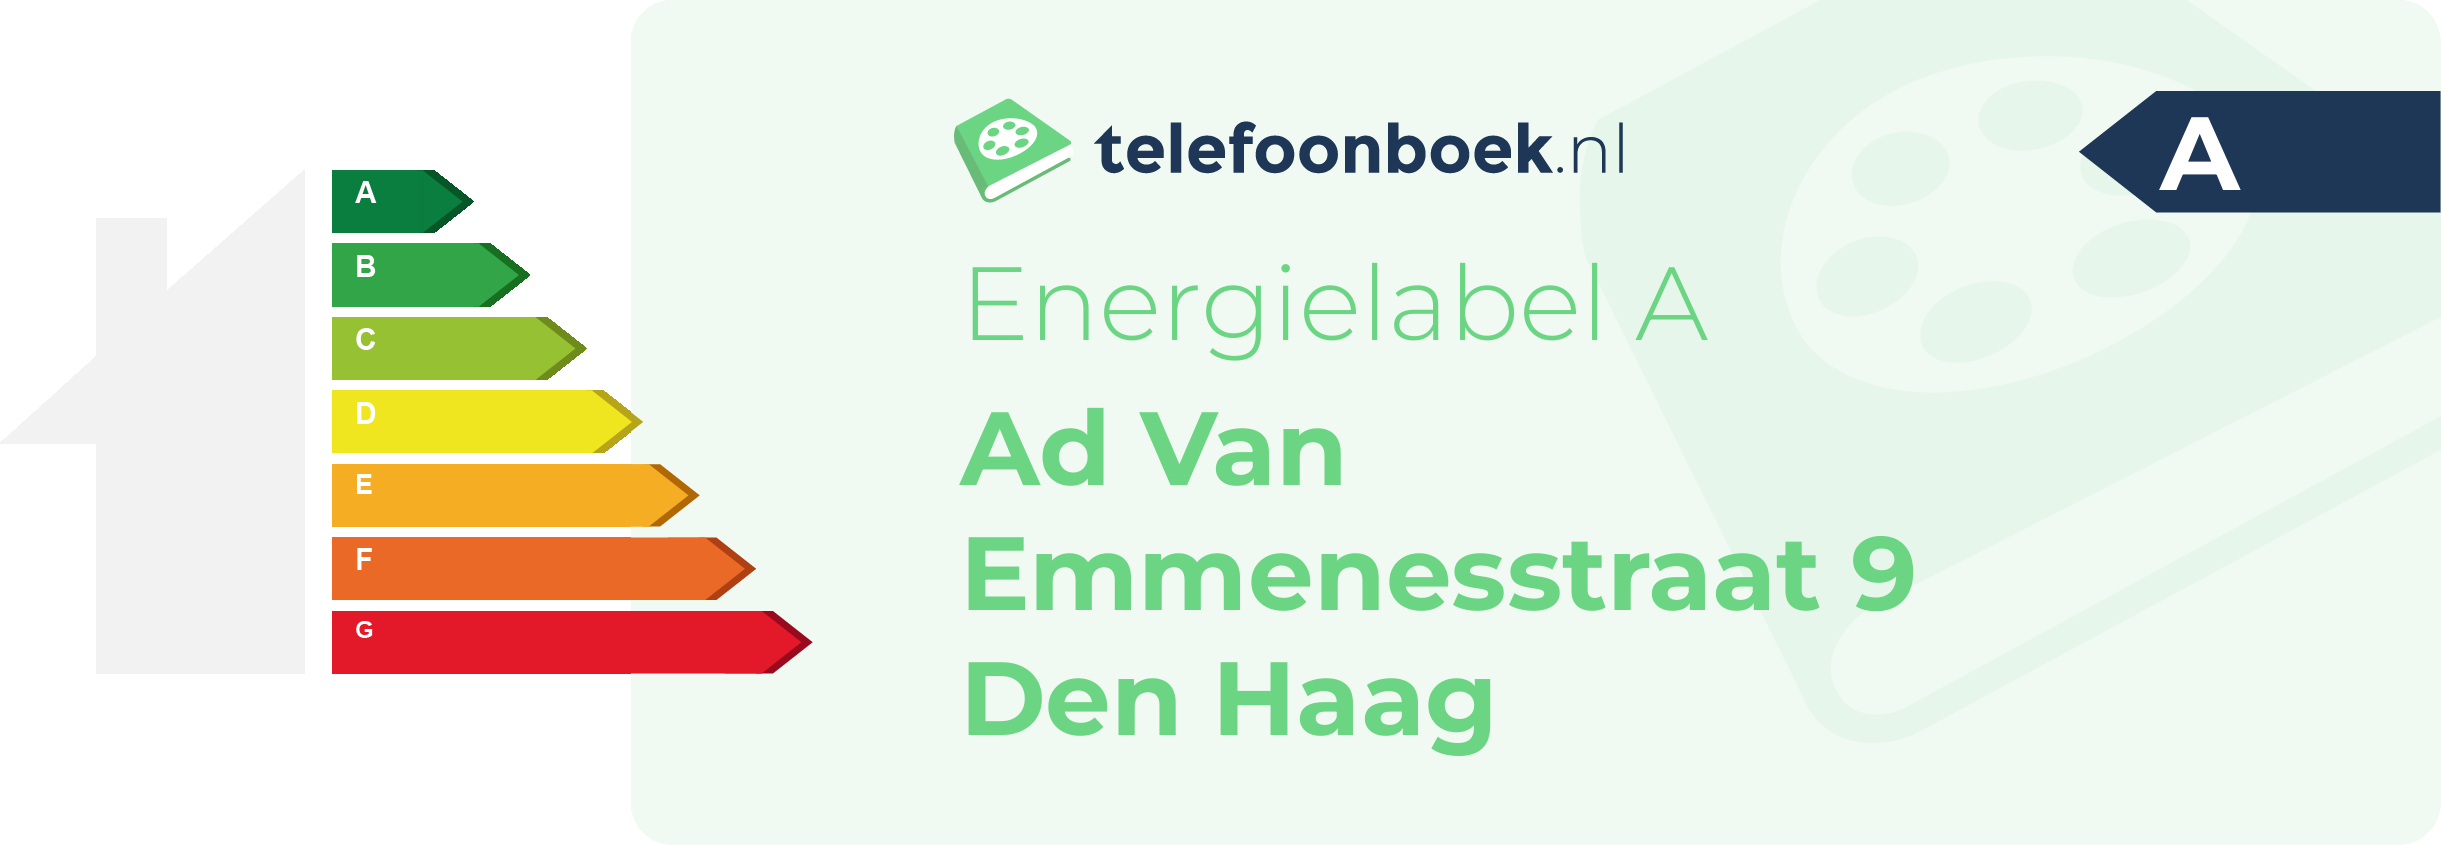 Energielabel Ad Van Emmenesstraat 9 Den Haag